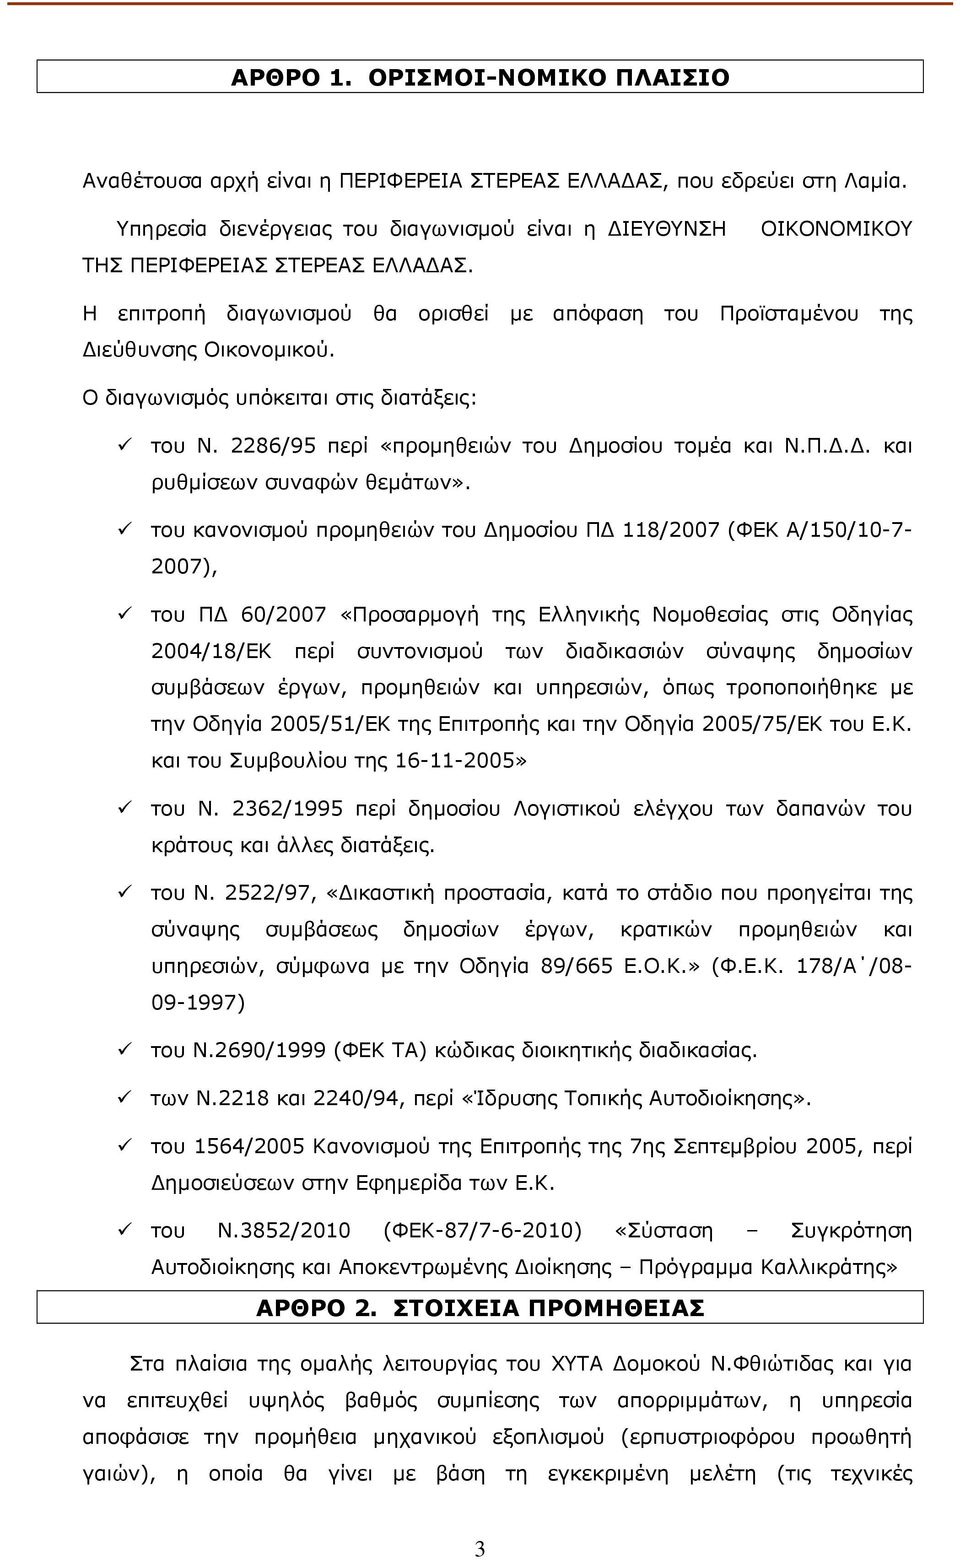 του κανονισµού προµηθειών του ηµοσίου Π 118/2007 (ΦΕΚ Α/150/10-7- 2007), του Π 60/2007 «Προσαρµογή της Ελληνικής Νοµοθεσίας στις Οδηγίας 2004/18/ΕΚ περί συντονισµού των διαδικασιών σύναψης δηµοσίων